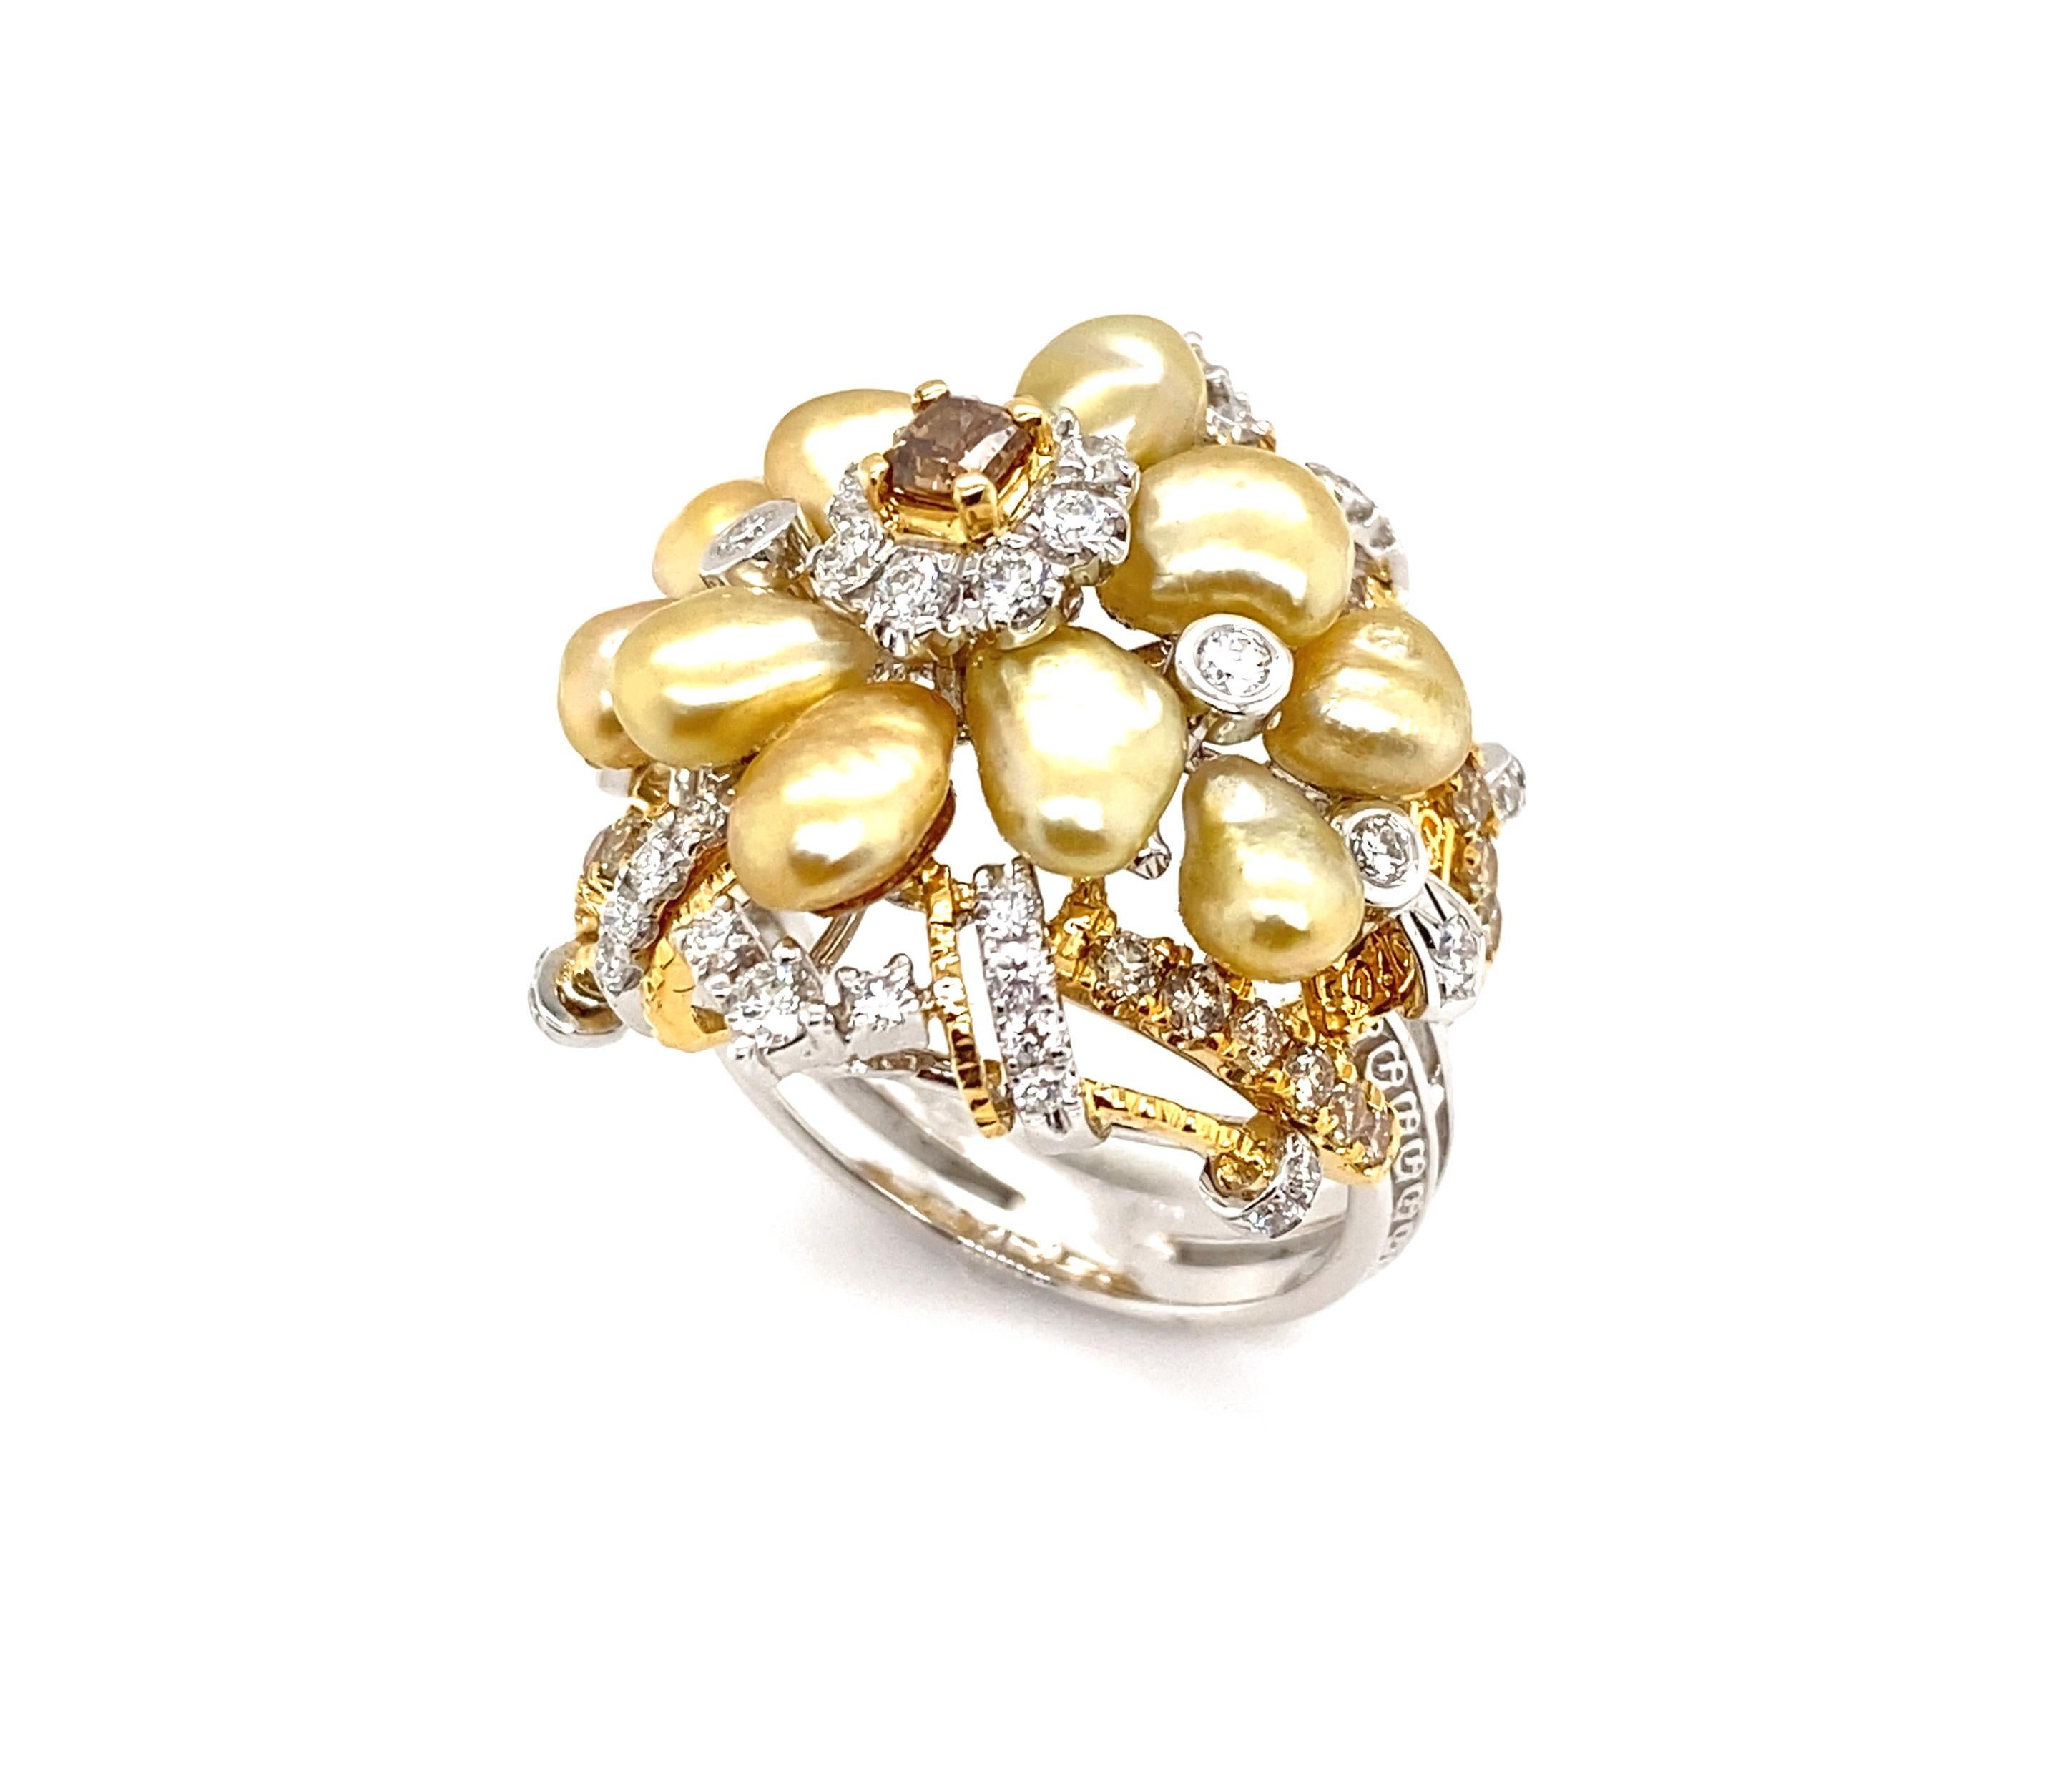 Keshi-Perlen bestehen aus reinem Perlmutt und sind ein wahrer Luxus. Passend zur Seltenheit und natürlichen Schönheit dieser einzigartigen Perlen ist Dilys' Design königlich und erfrischend zugleich. Es orientiert sich an monarchischem